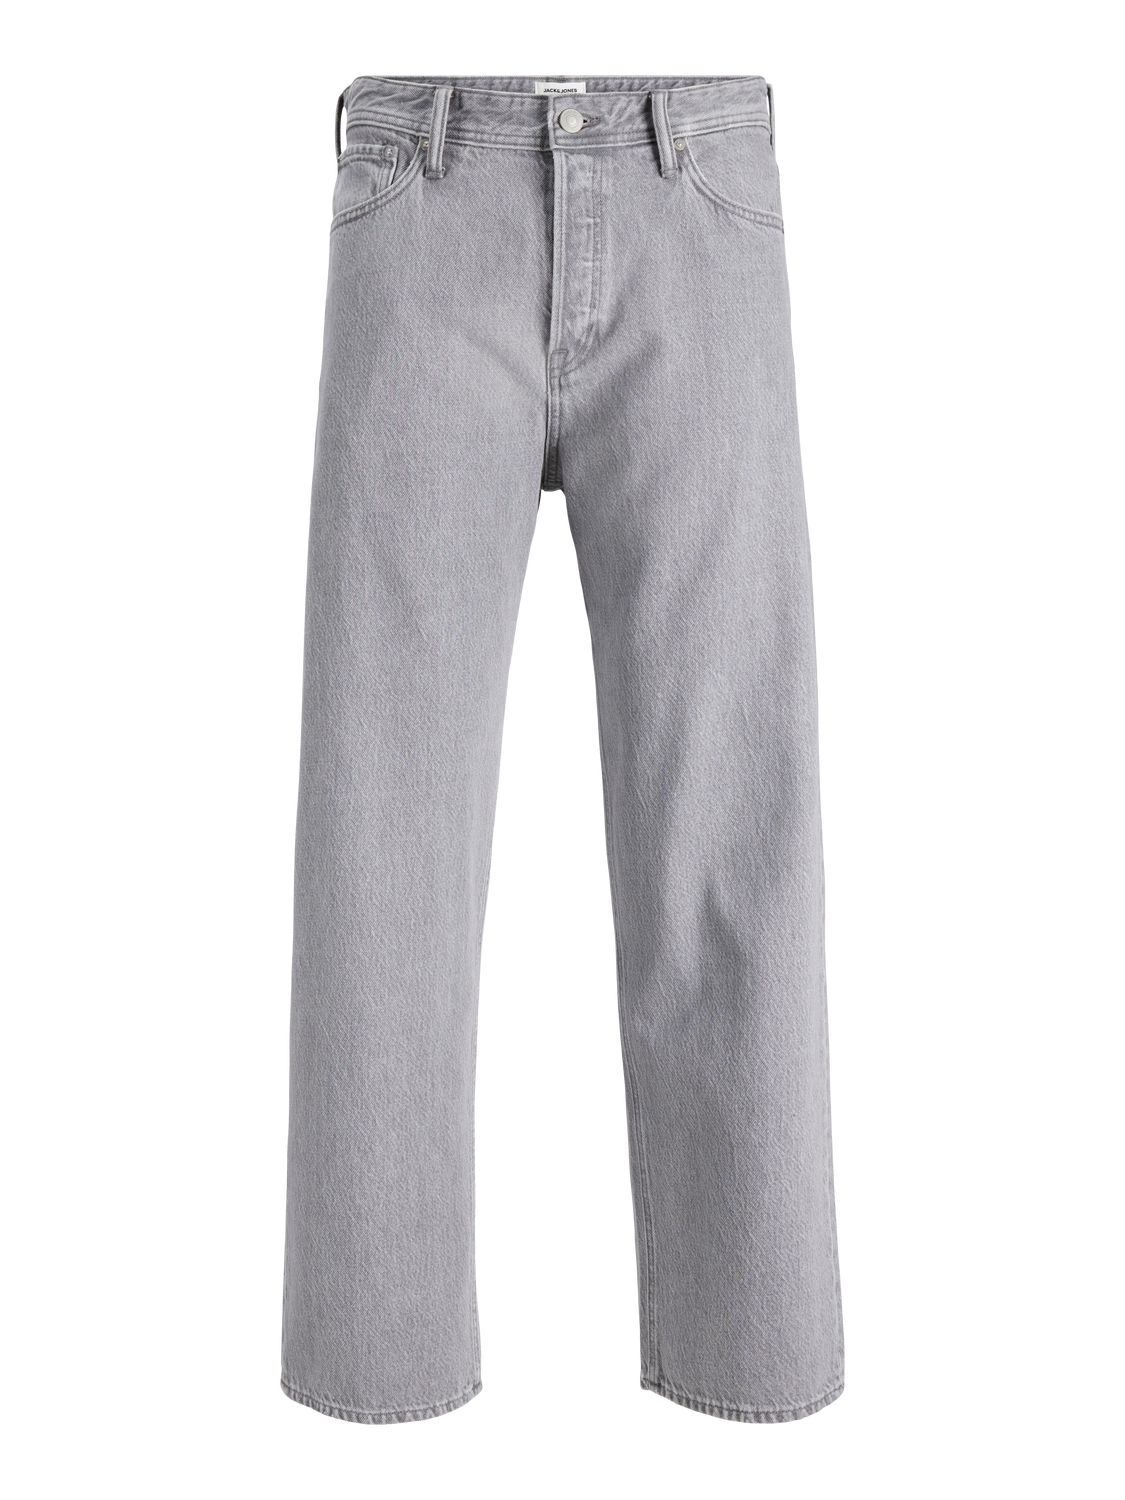 JJIALEX Jeans - Grey Denim